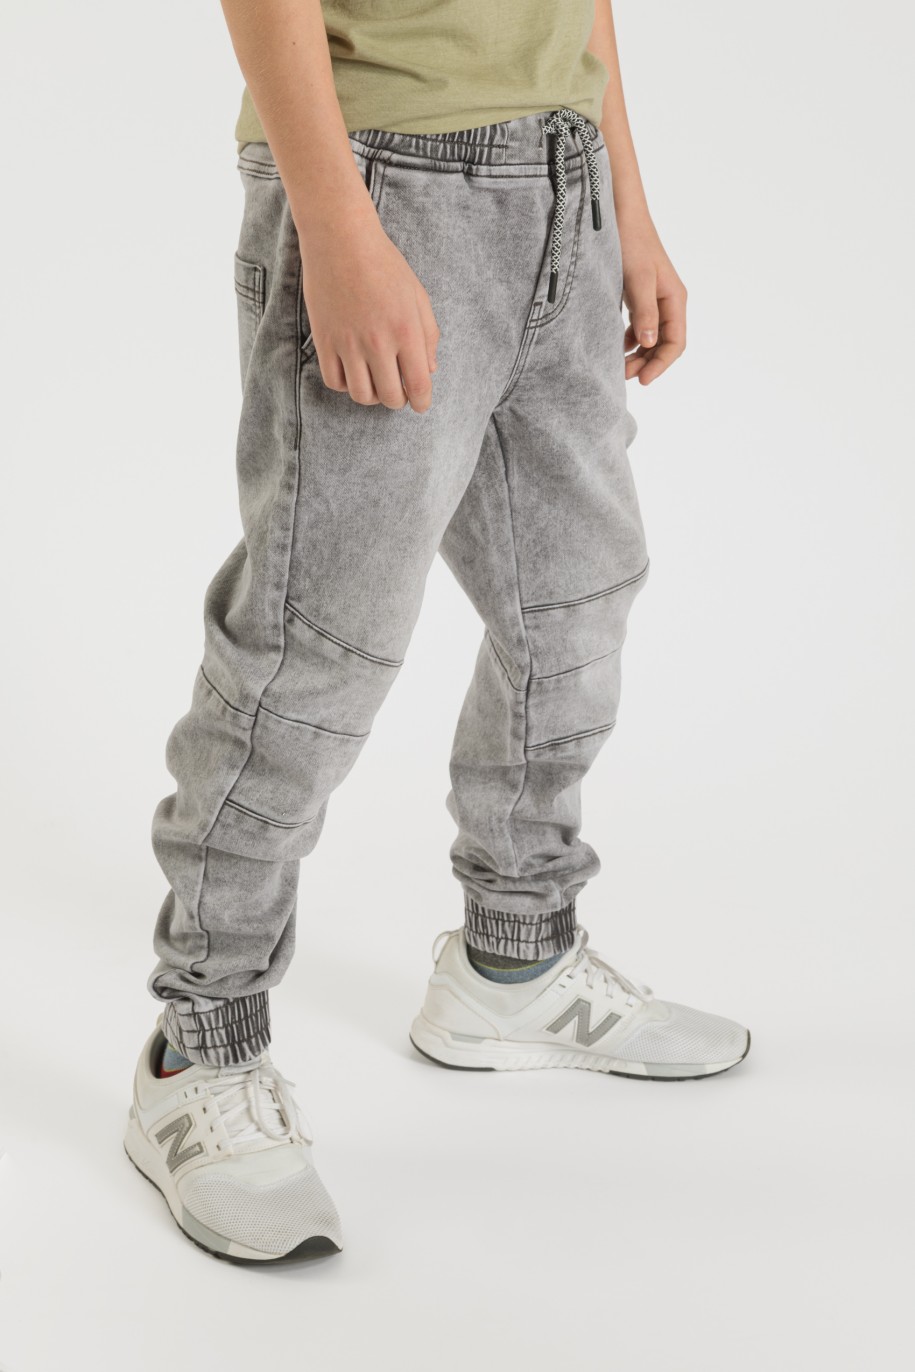 Szare jeansy typu jogger ze ściągaczami dla chłopaka - 33586